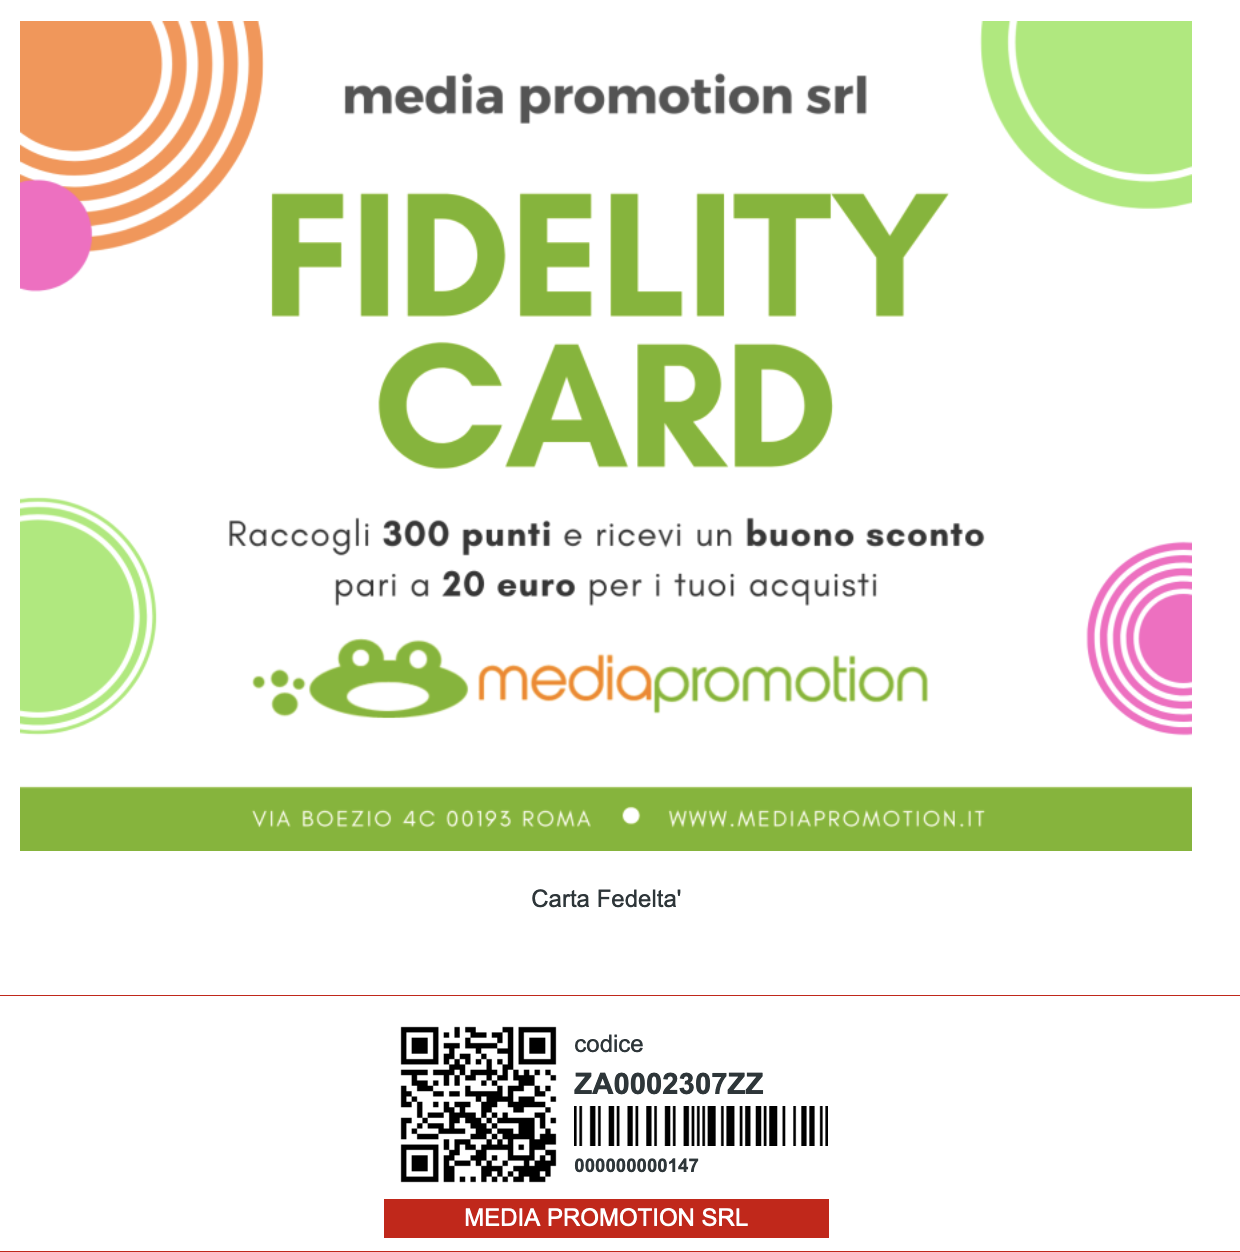 crea fidelity card digitale